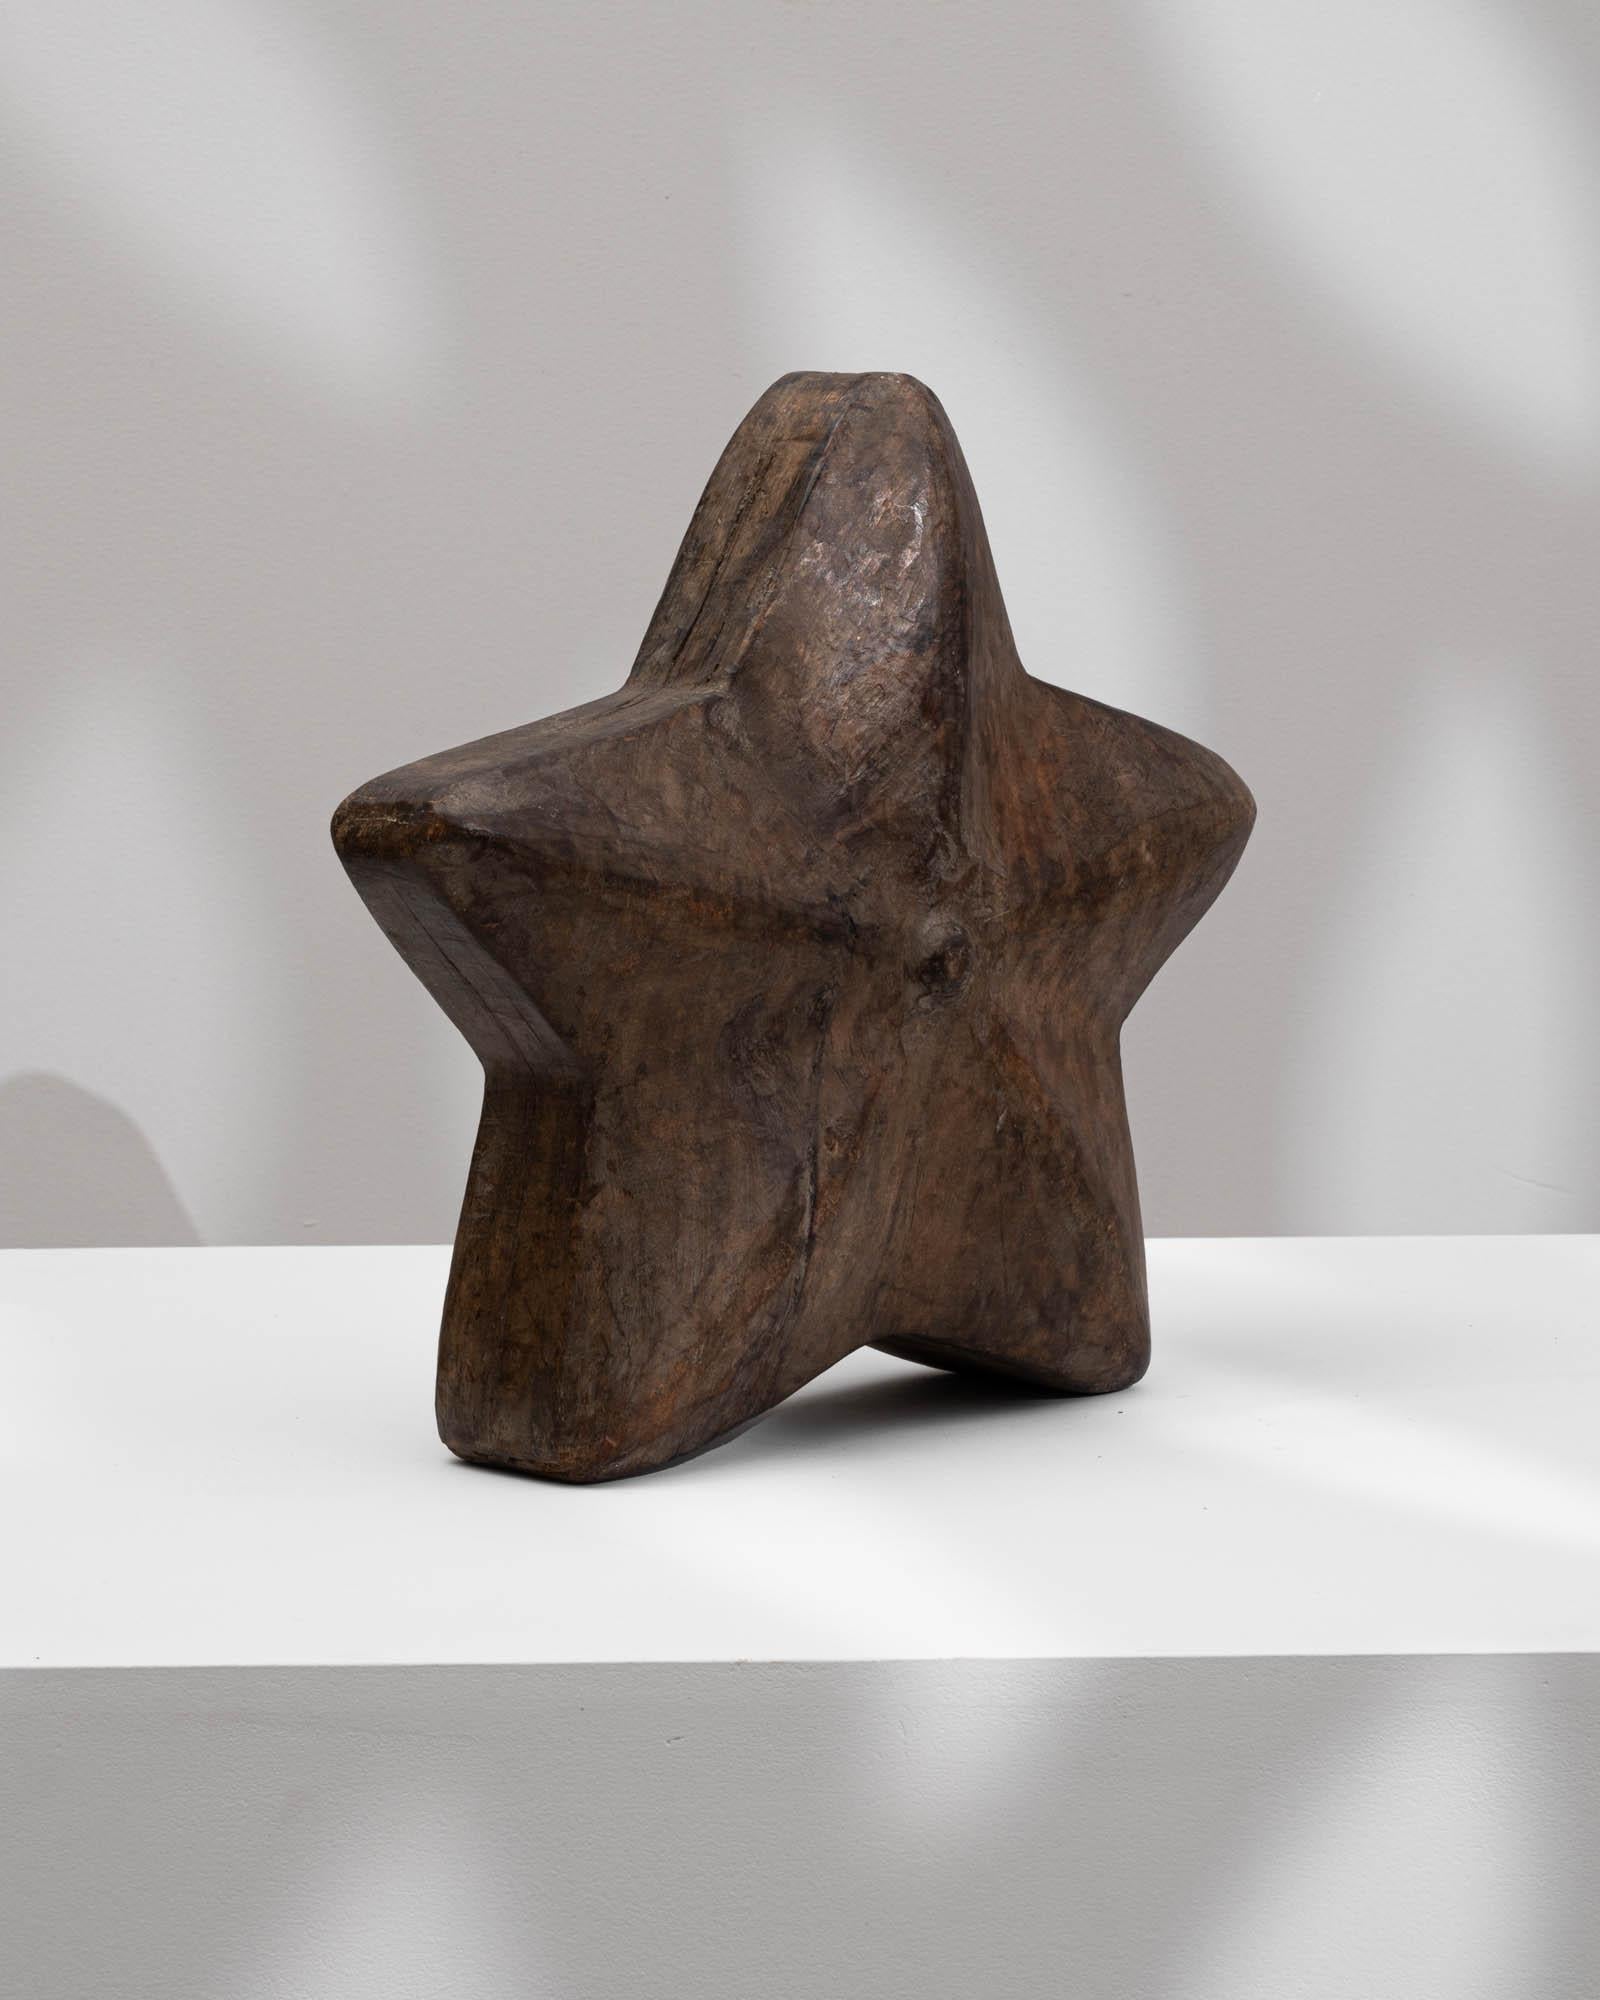 Rehaussez votre décor avec la présence enchanteresse de cette étoile en bois sculpté français du 20e siècle. Fabriquée en bois foncé, l'étoile dégage une élégance intemporelle qui s'intègre parfaitement à diverses esthétiques de design. Avec un